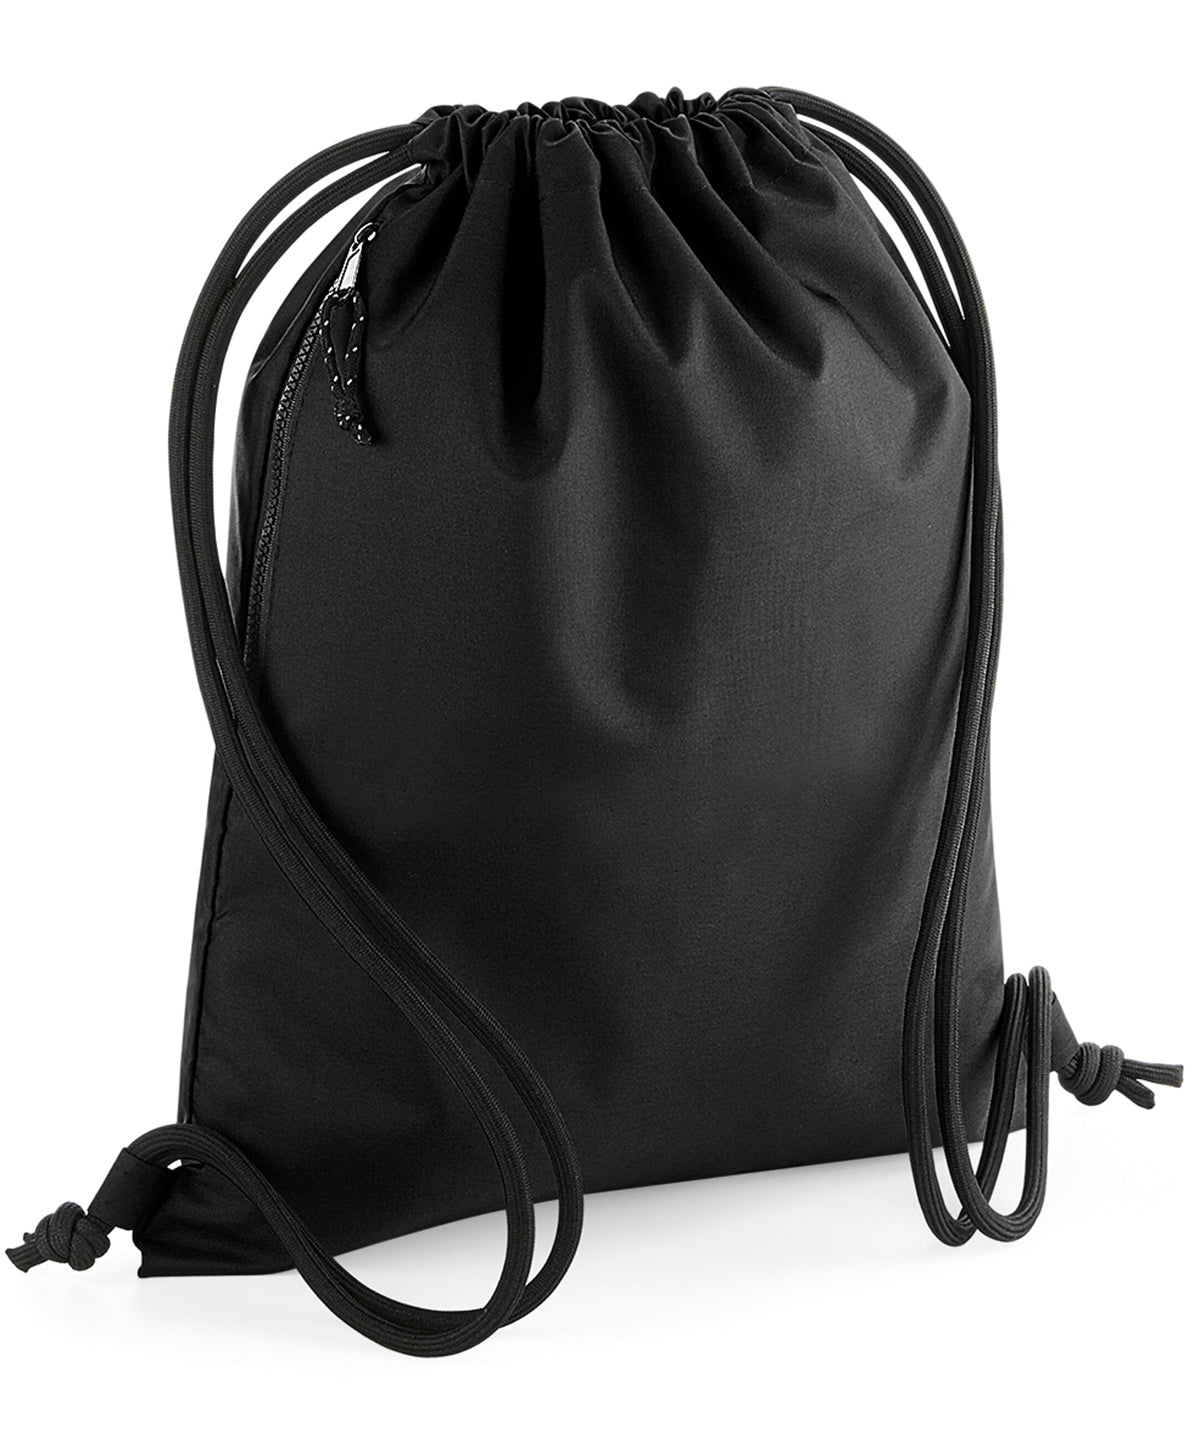 Personalised Bags - Black Bagbase Recycled gymsac